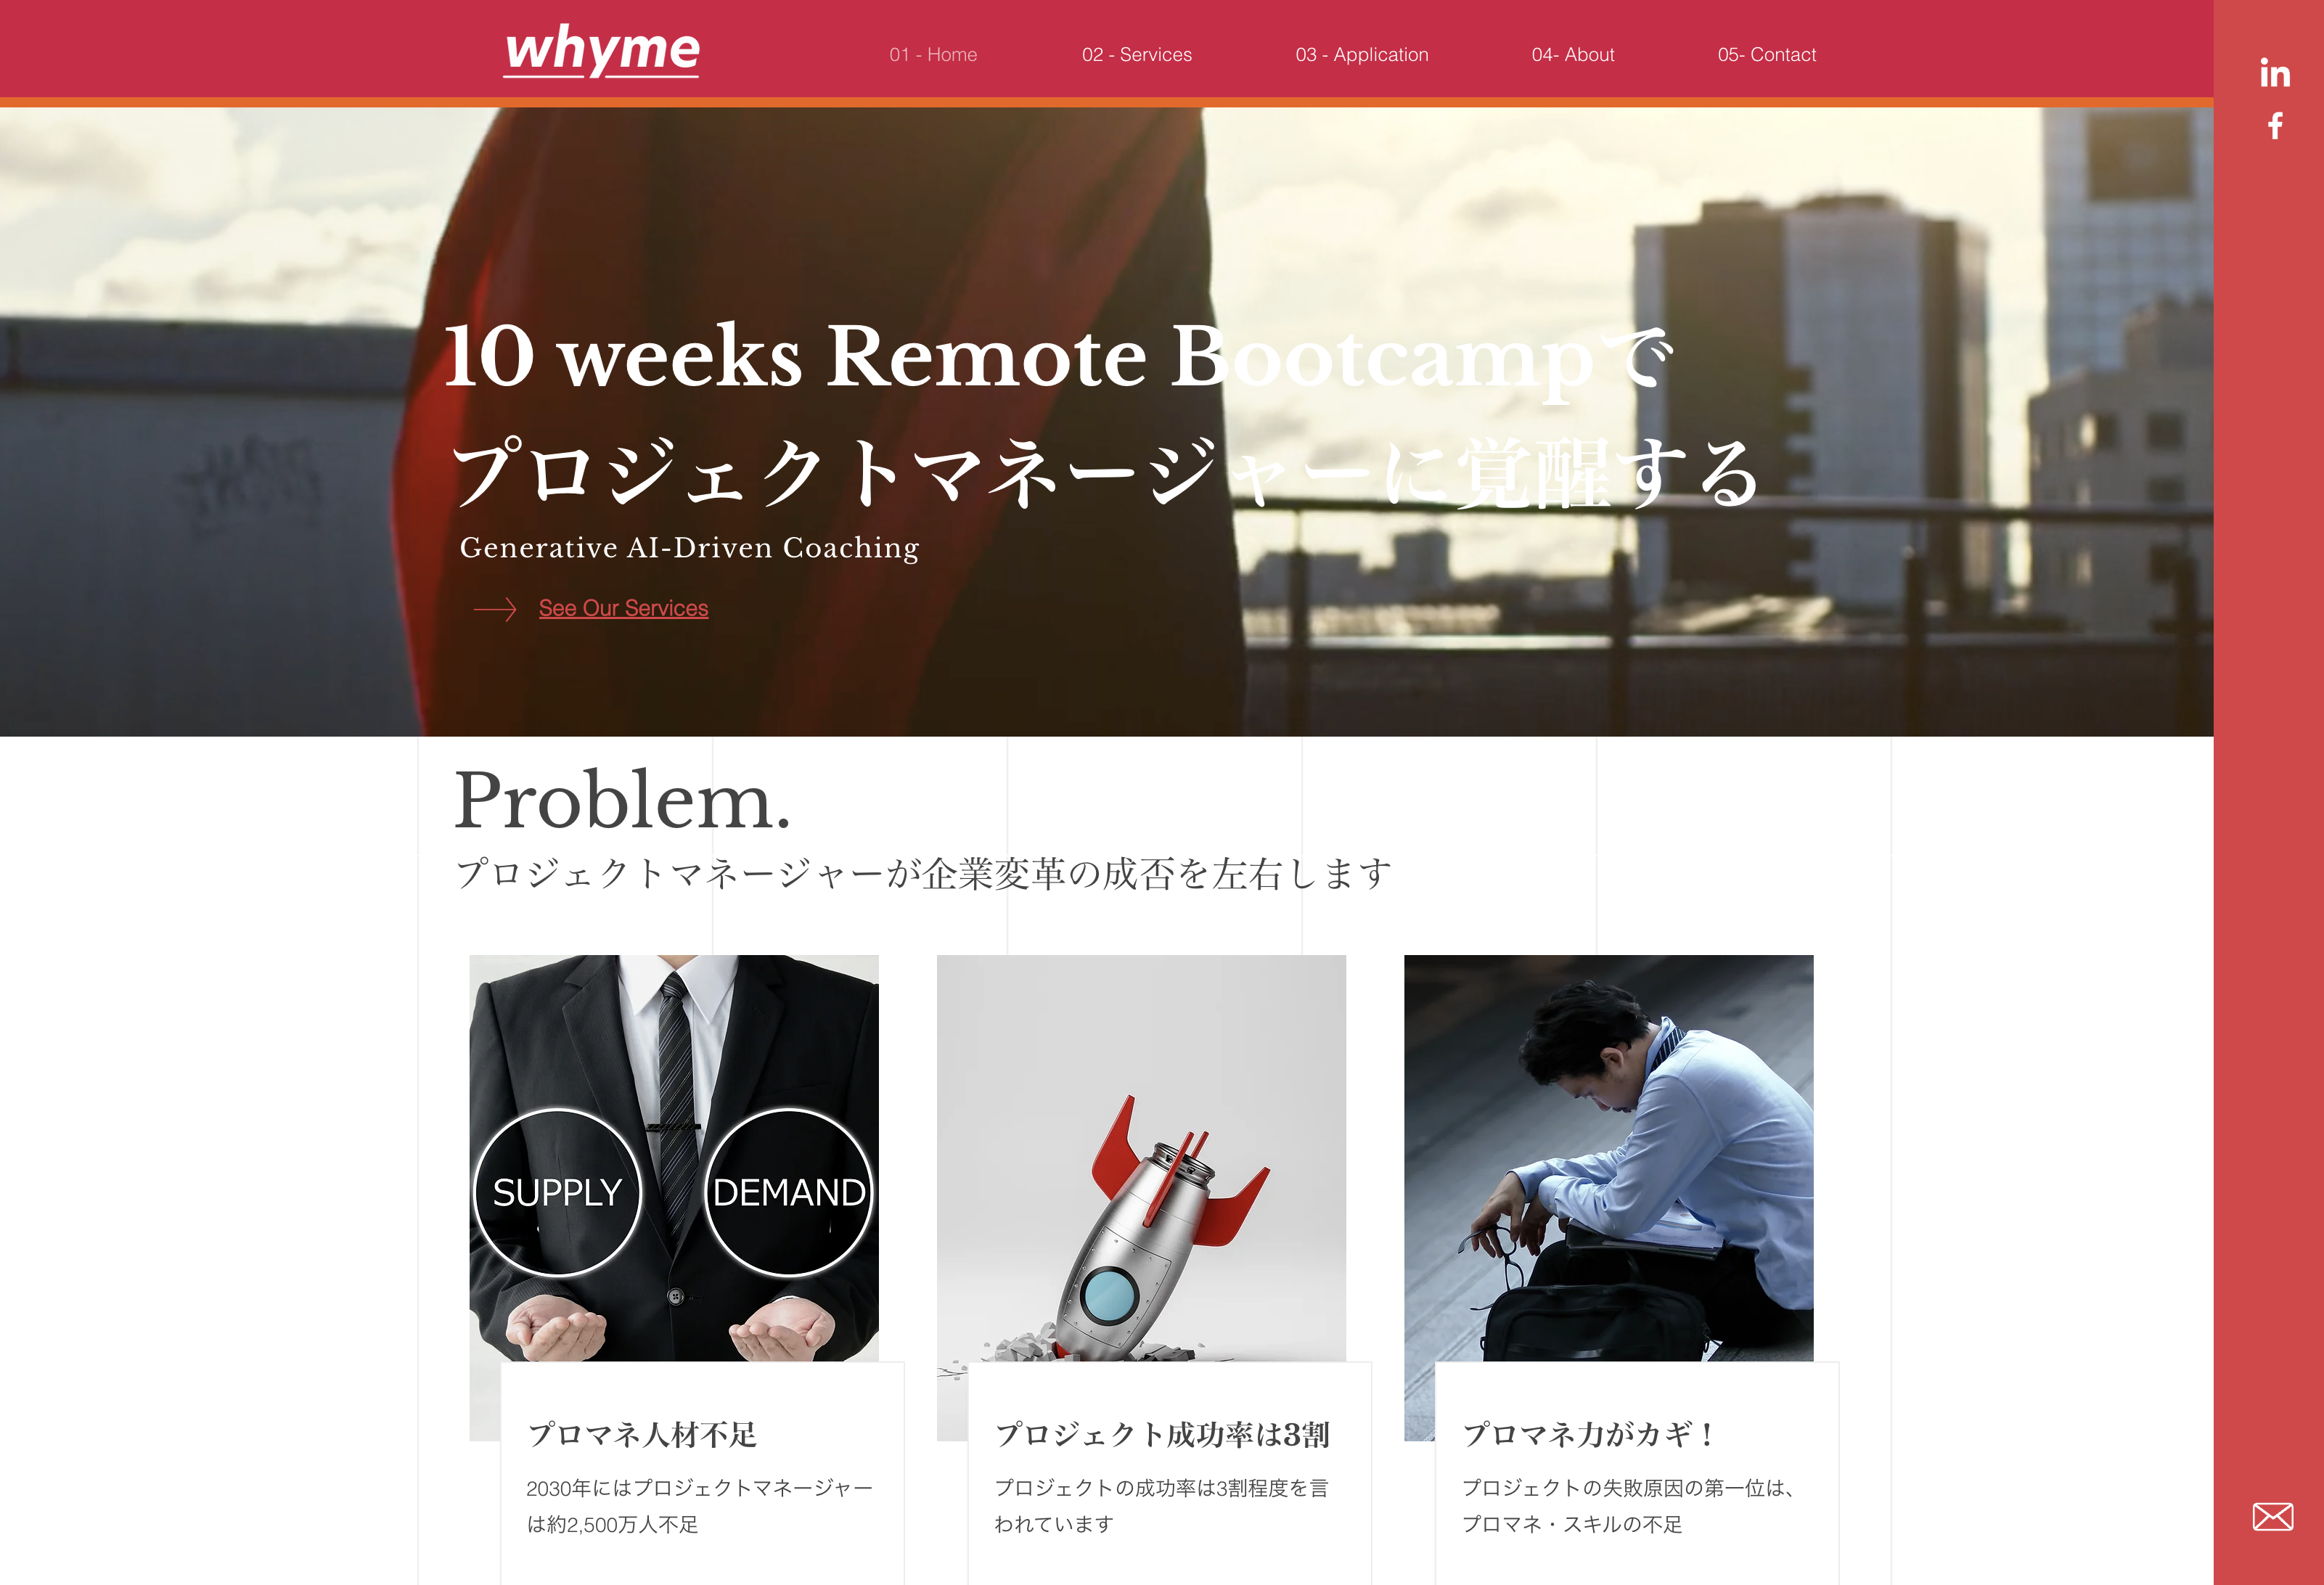 whyme株式会社のwhyme株式会社:社員研修サービス